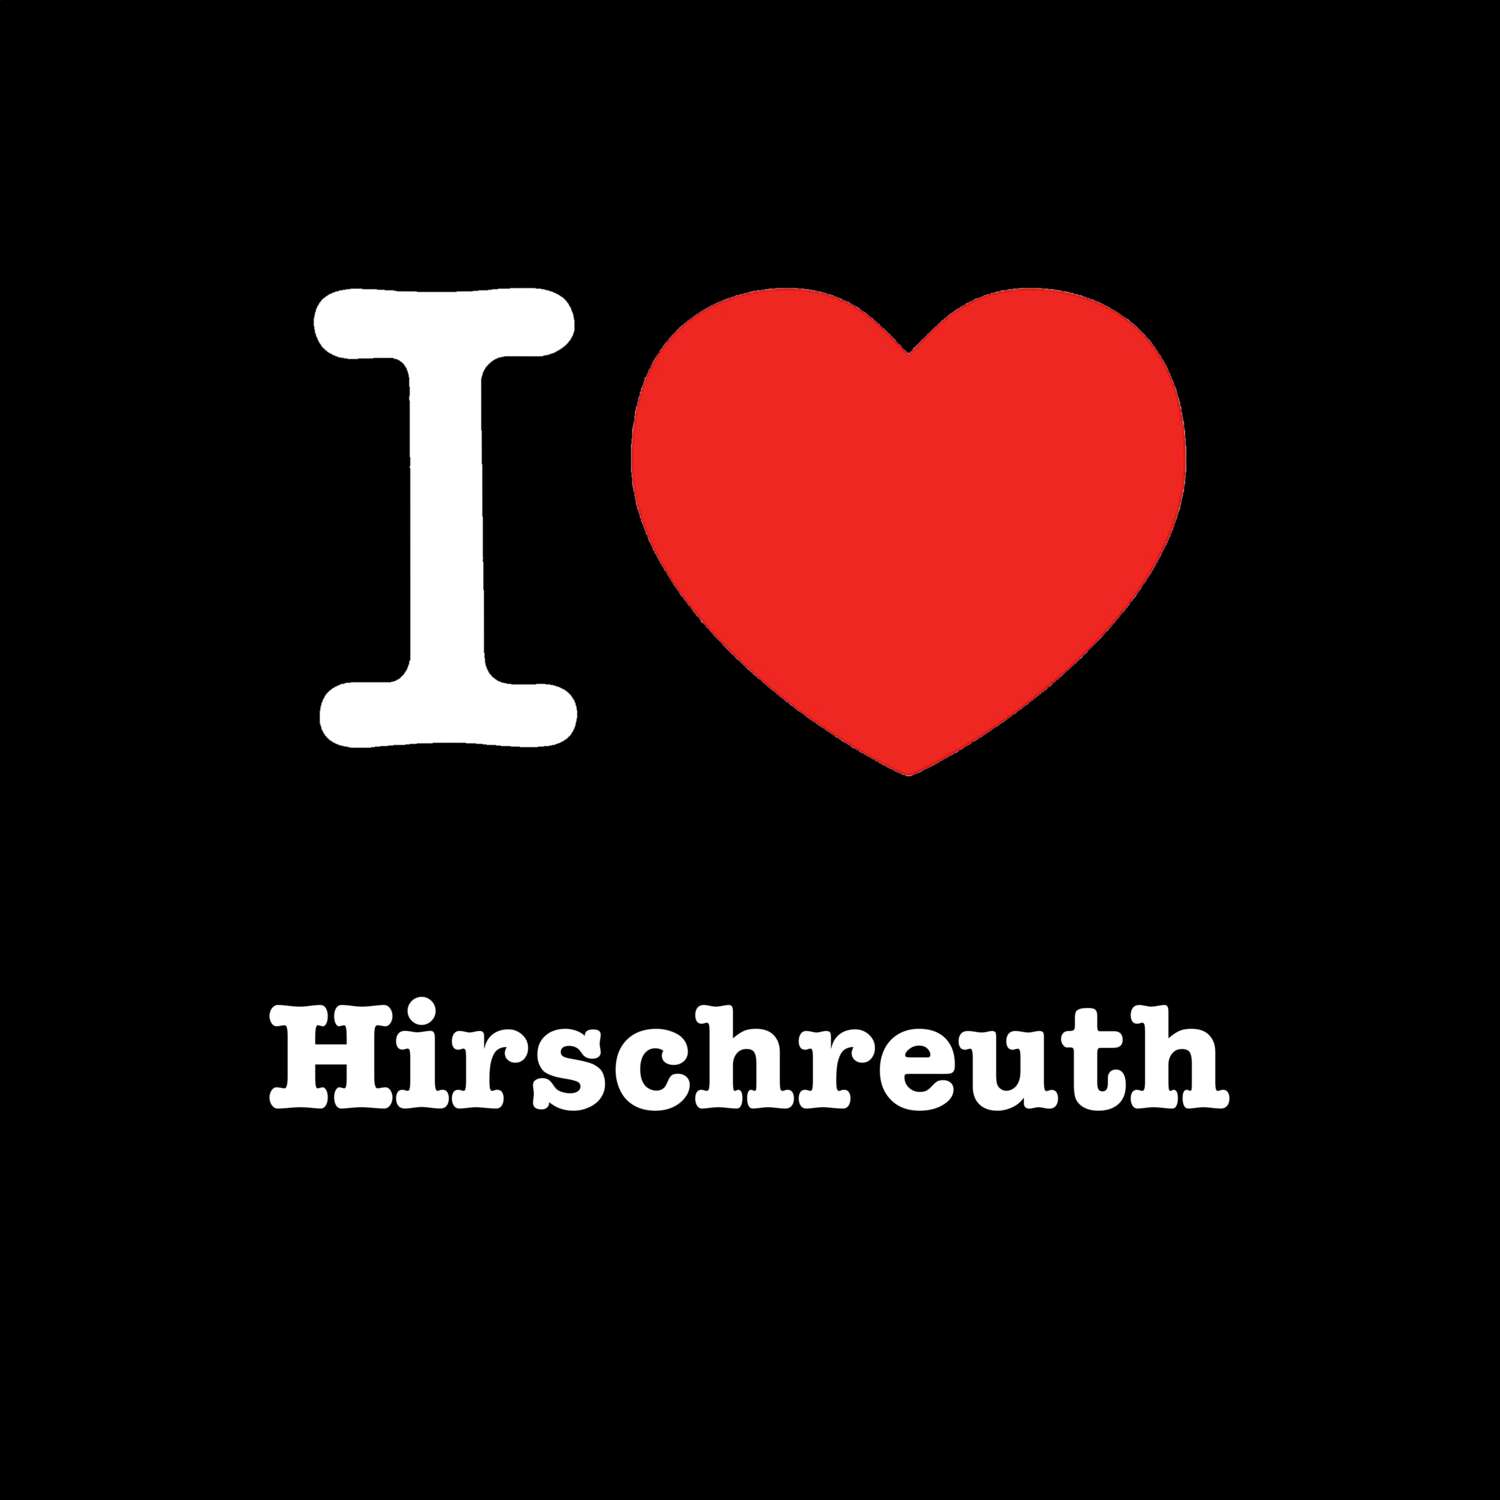 Hirschreuth T-Shirt »I love«